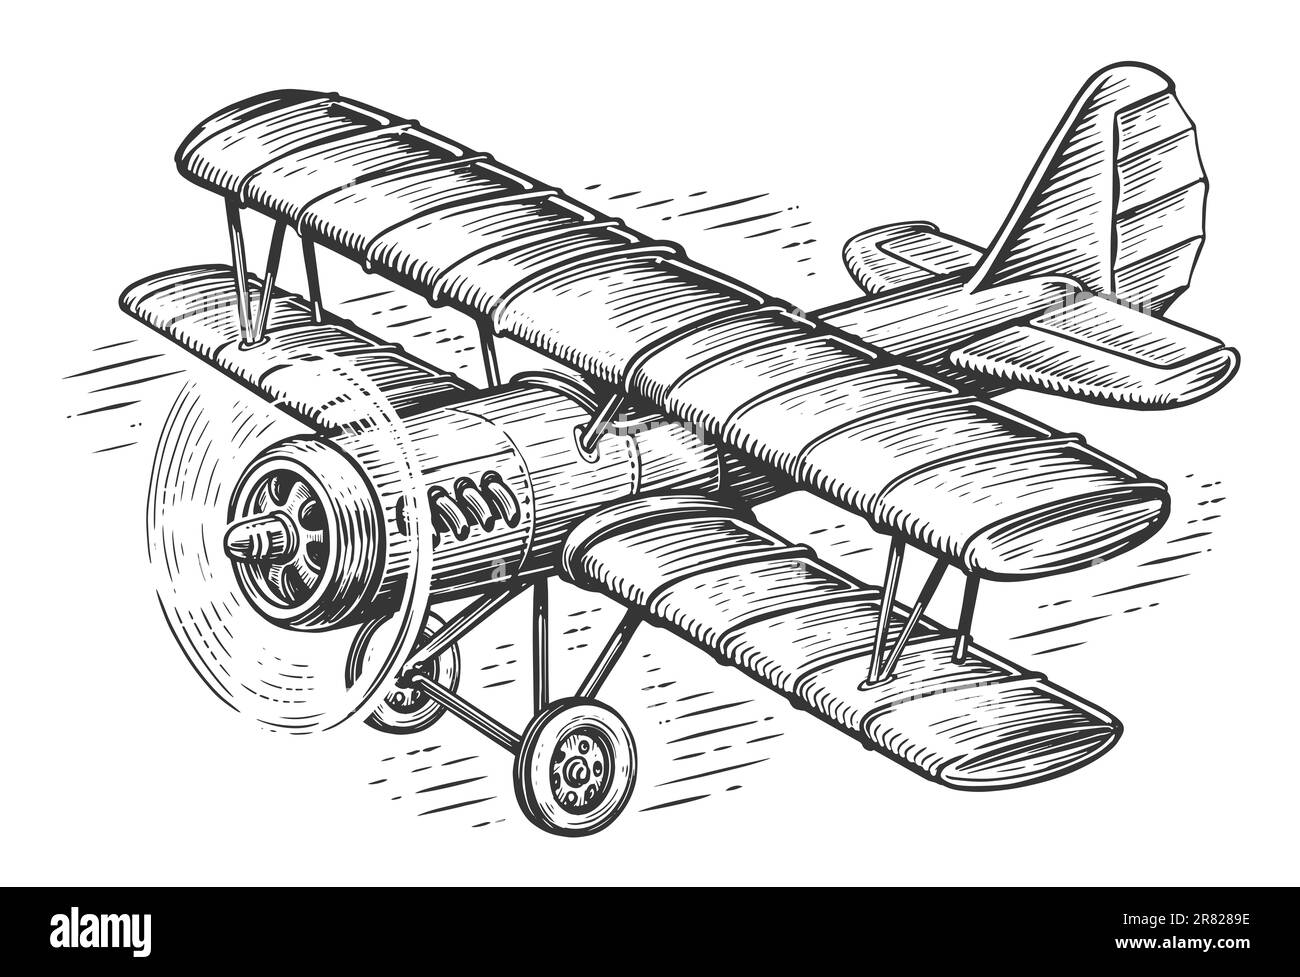 Avion rétro volant dans le ciel. Biplan avec esquisse du moteur à pistons. Illustration de transport vintage Banque D'Images